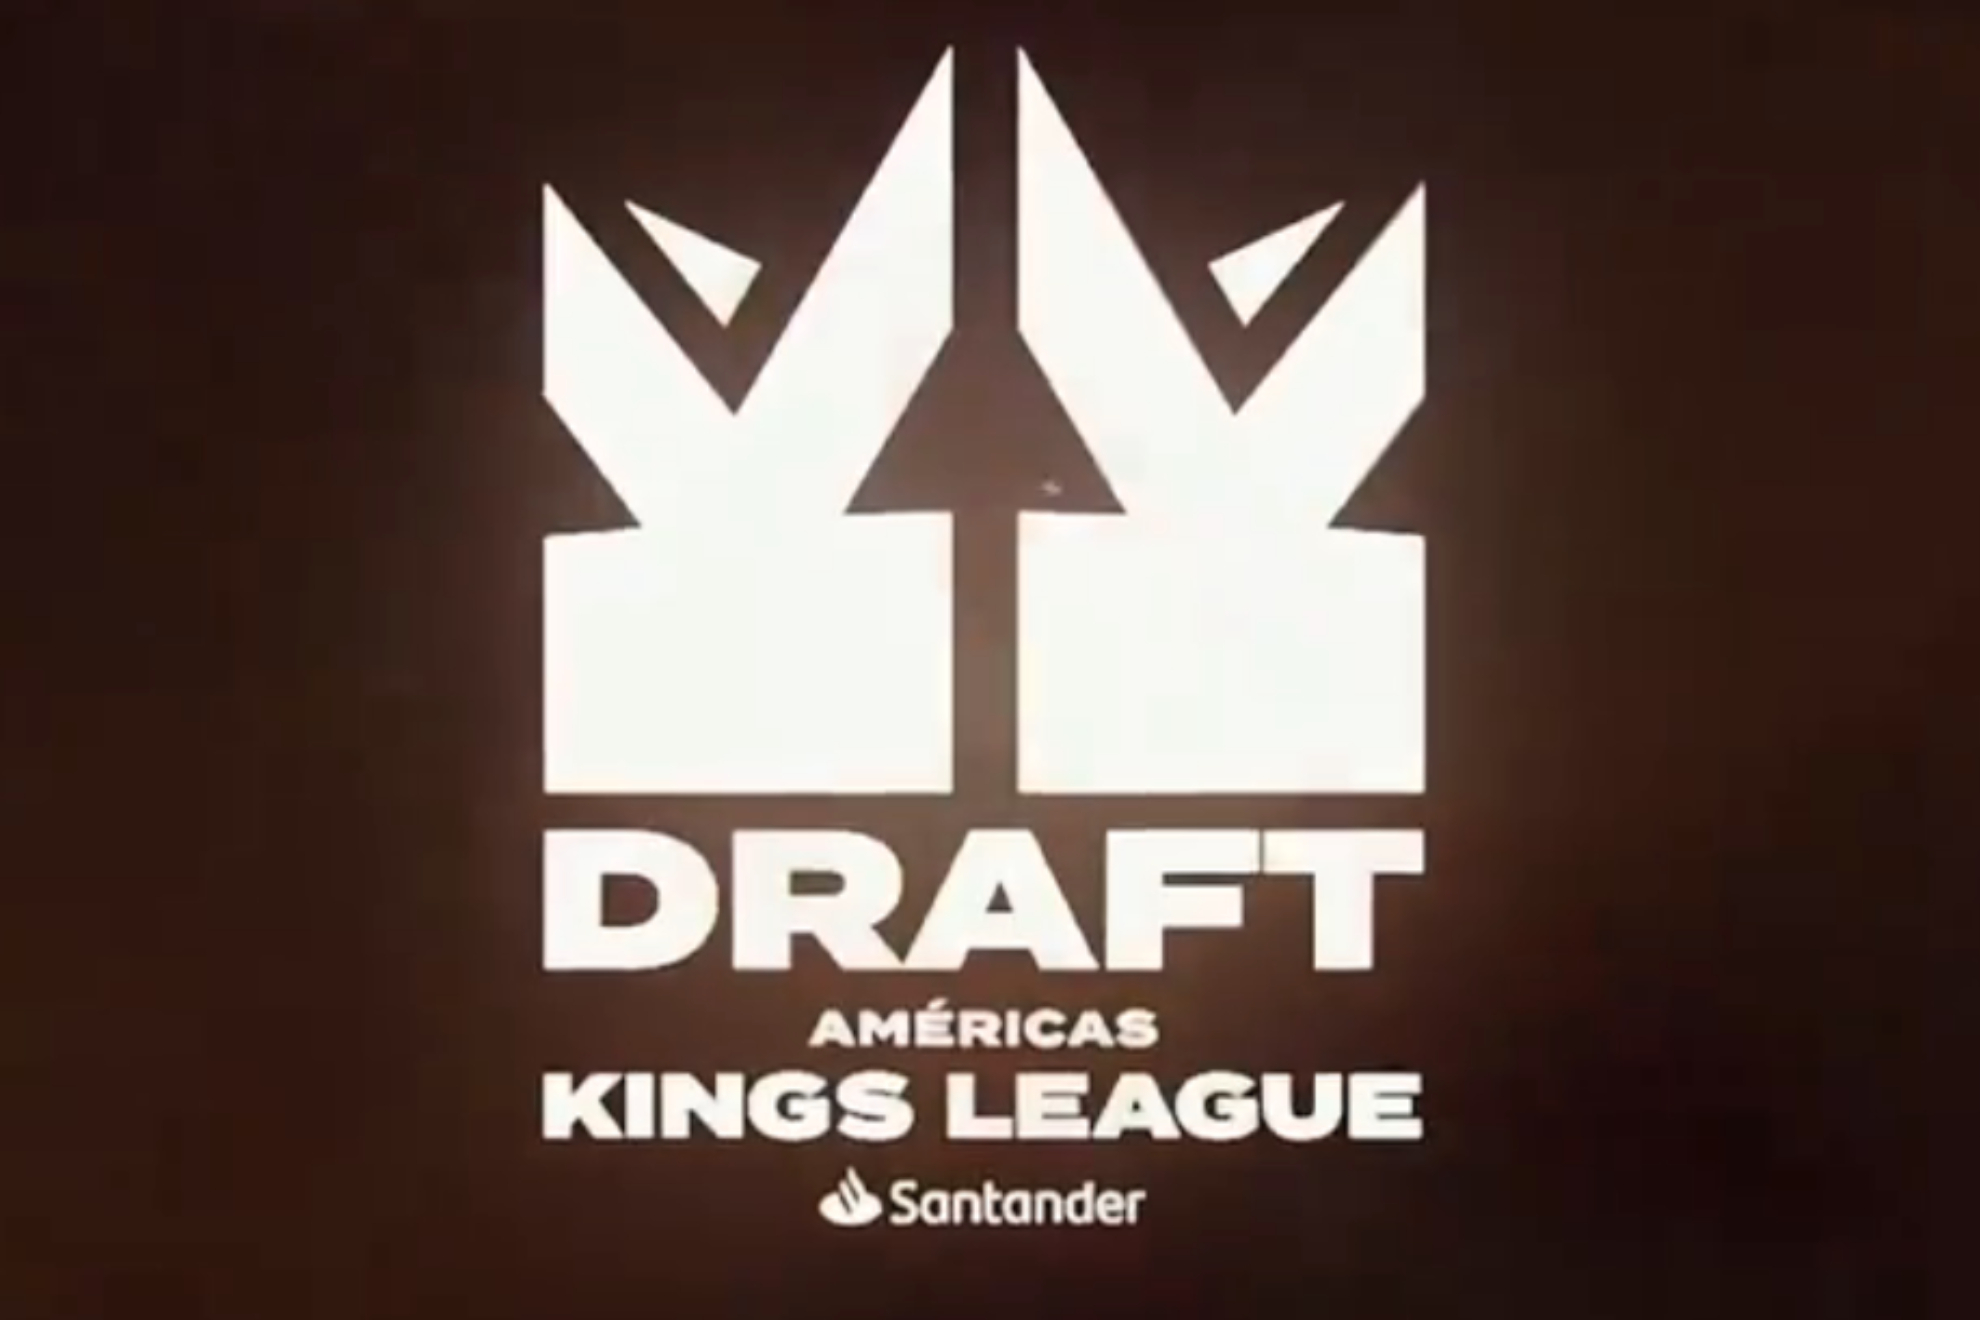 Draft Kings League Santander